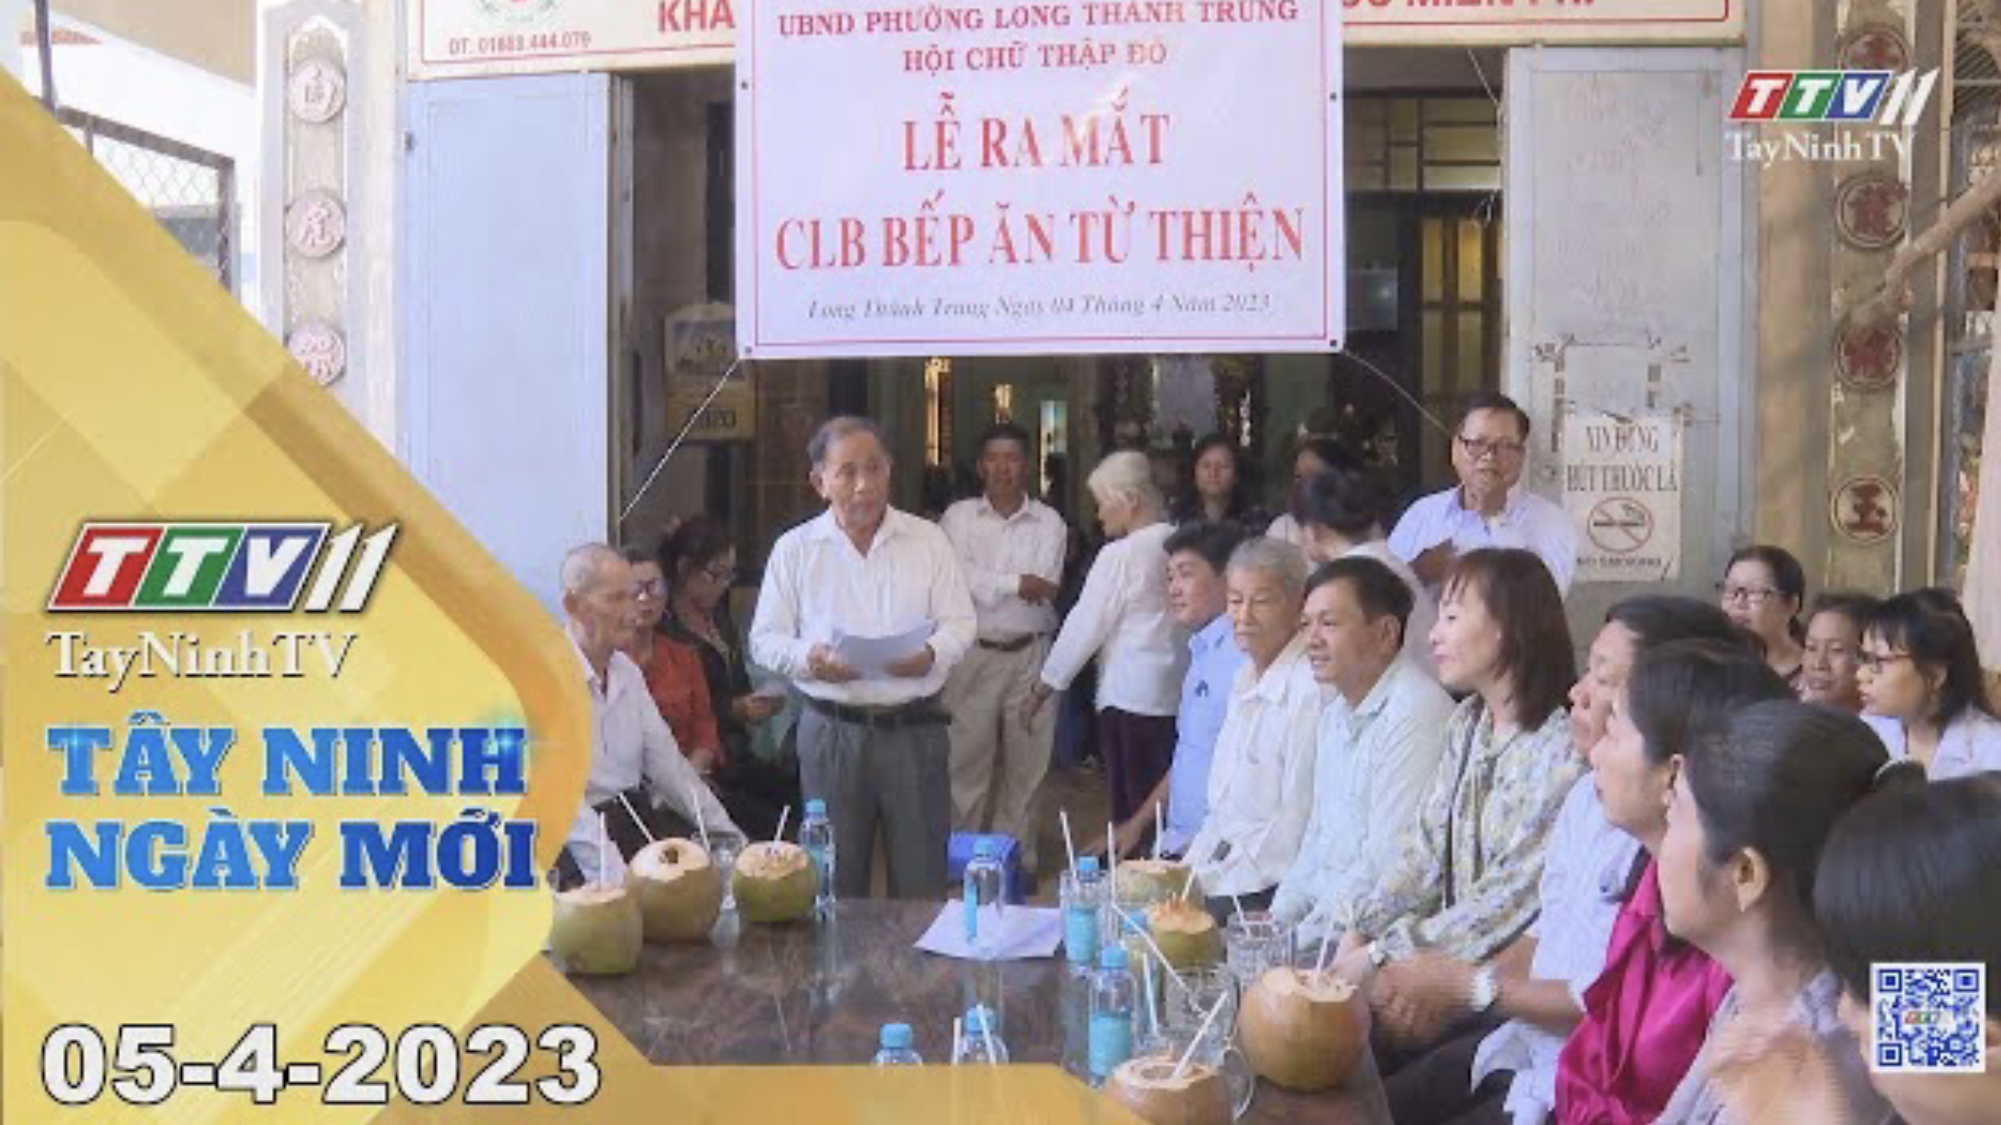 Tây Ninh ngày mới 05-4-2023 | Tin tức hôm nay | TayNinhTV